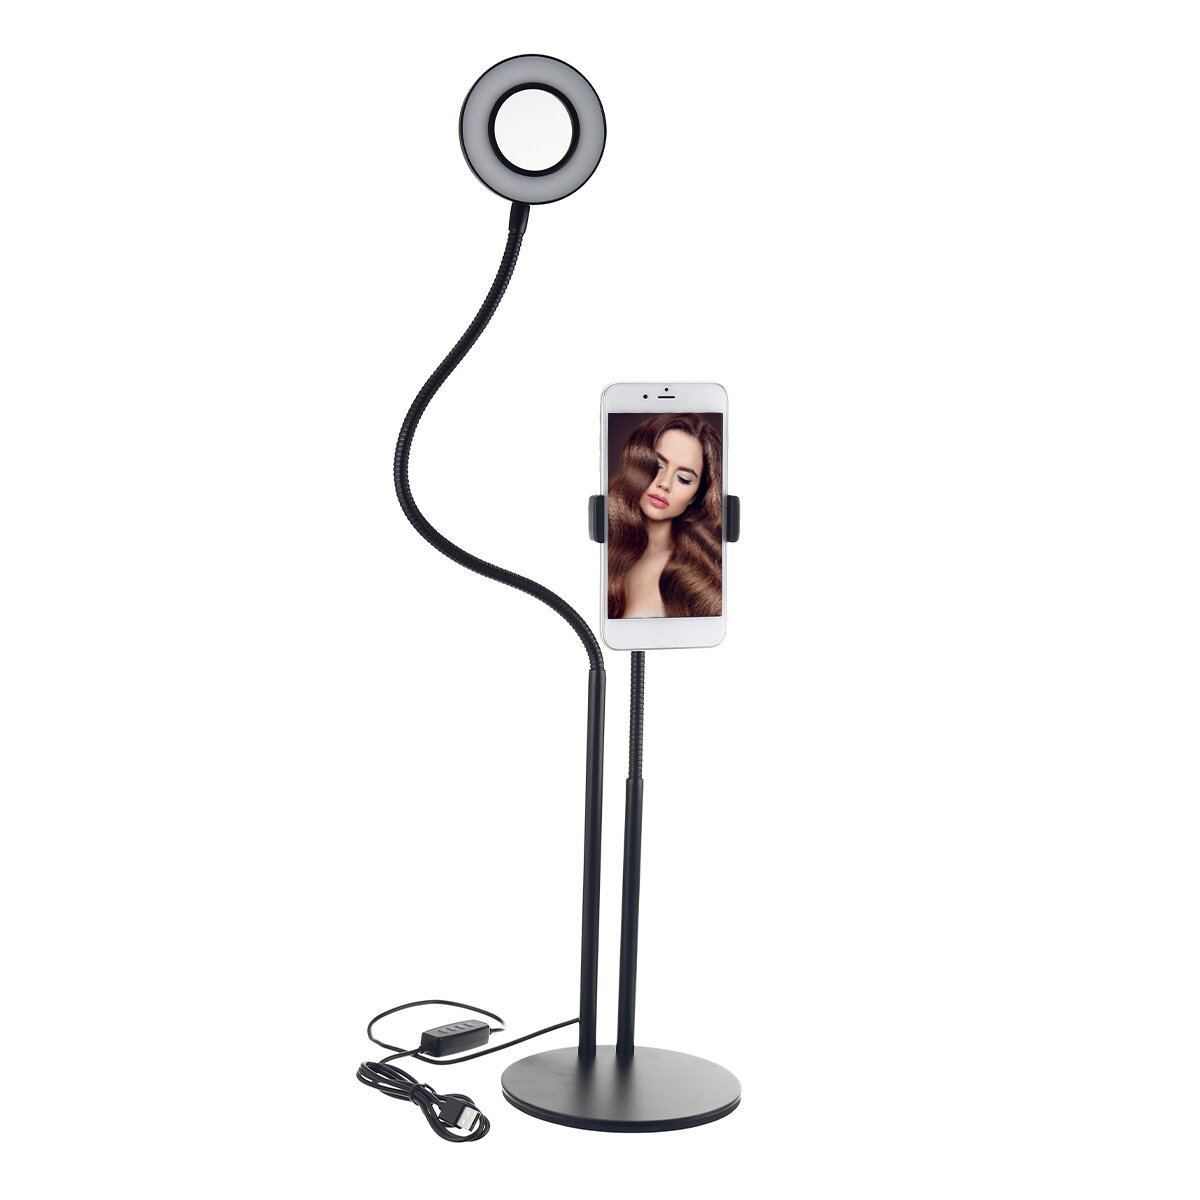 BX-02 Universal Selfie Ring Light Flexible Desk Lamp LED Fill Beauty Light 11 Brightness 3 Colour Di